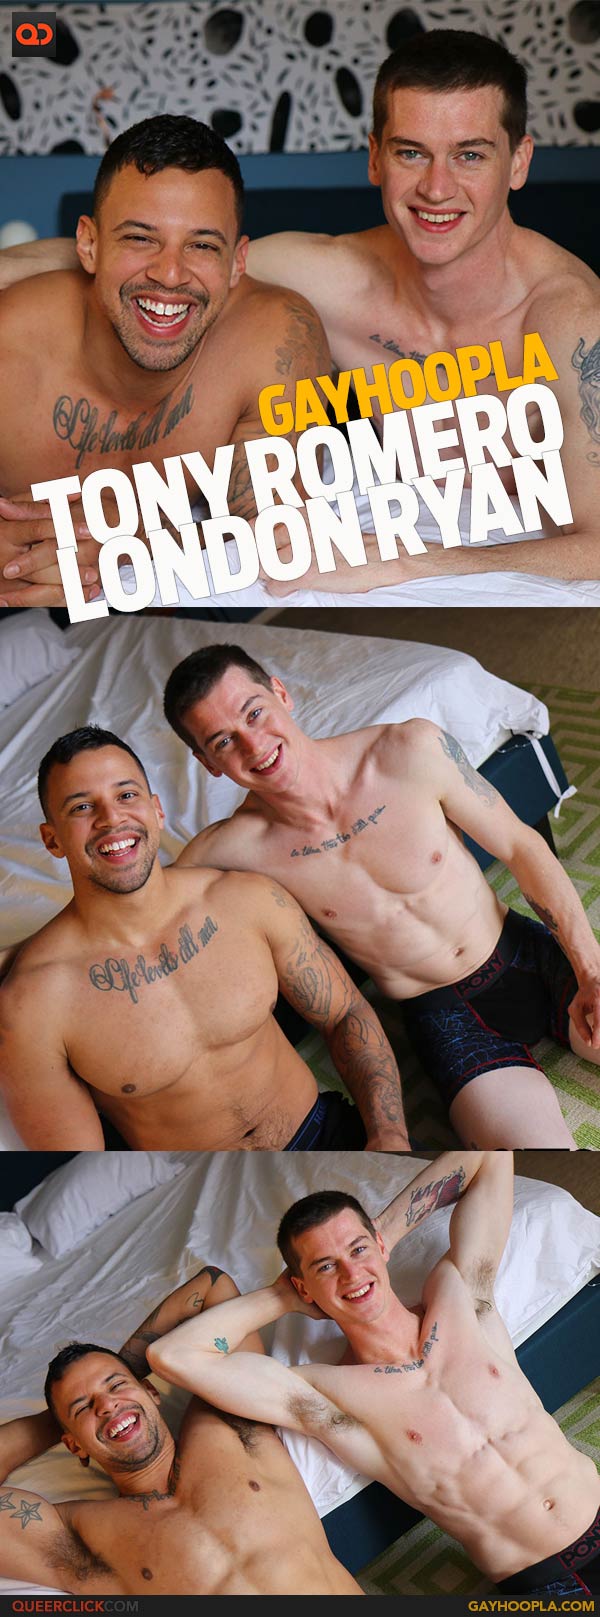 GayHoopla: London Ryan and Tony Romero